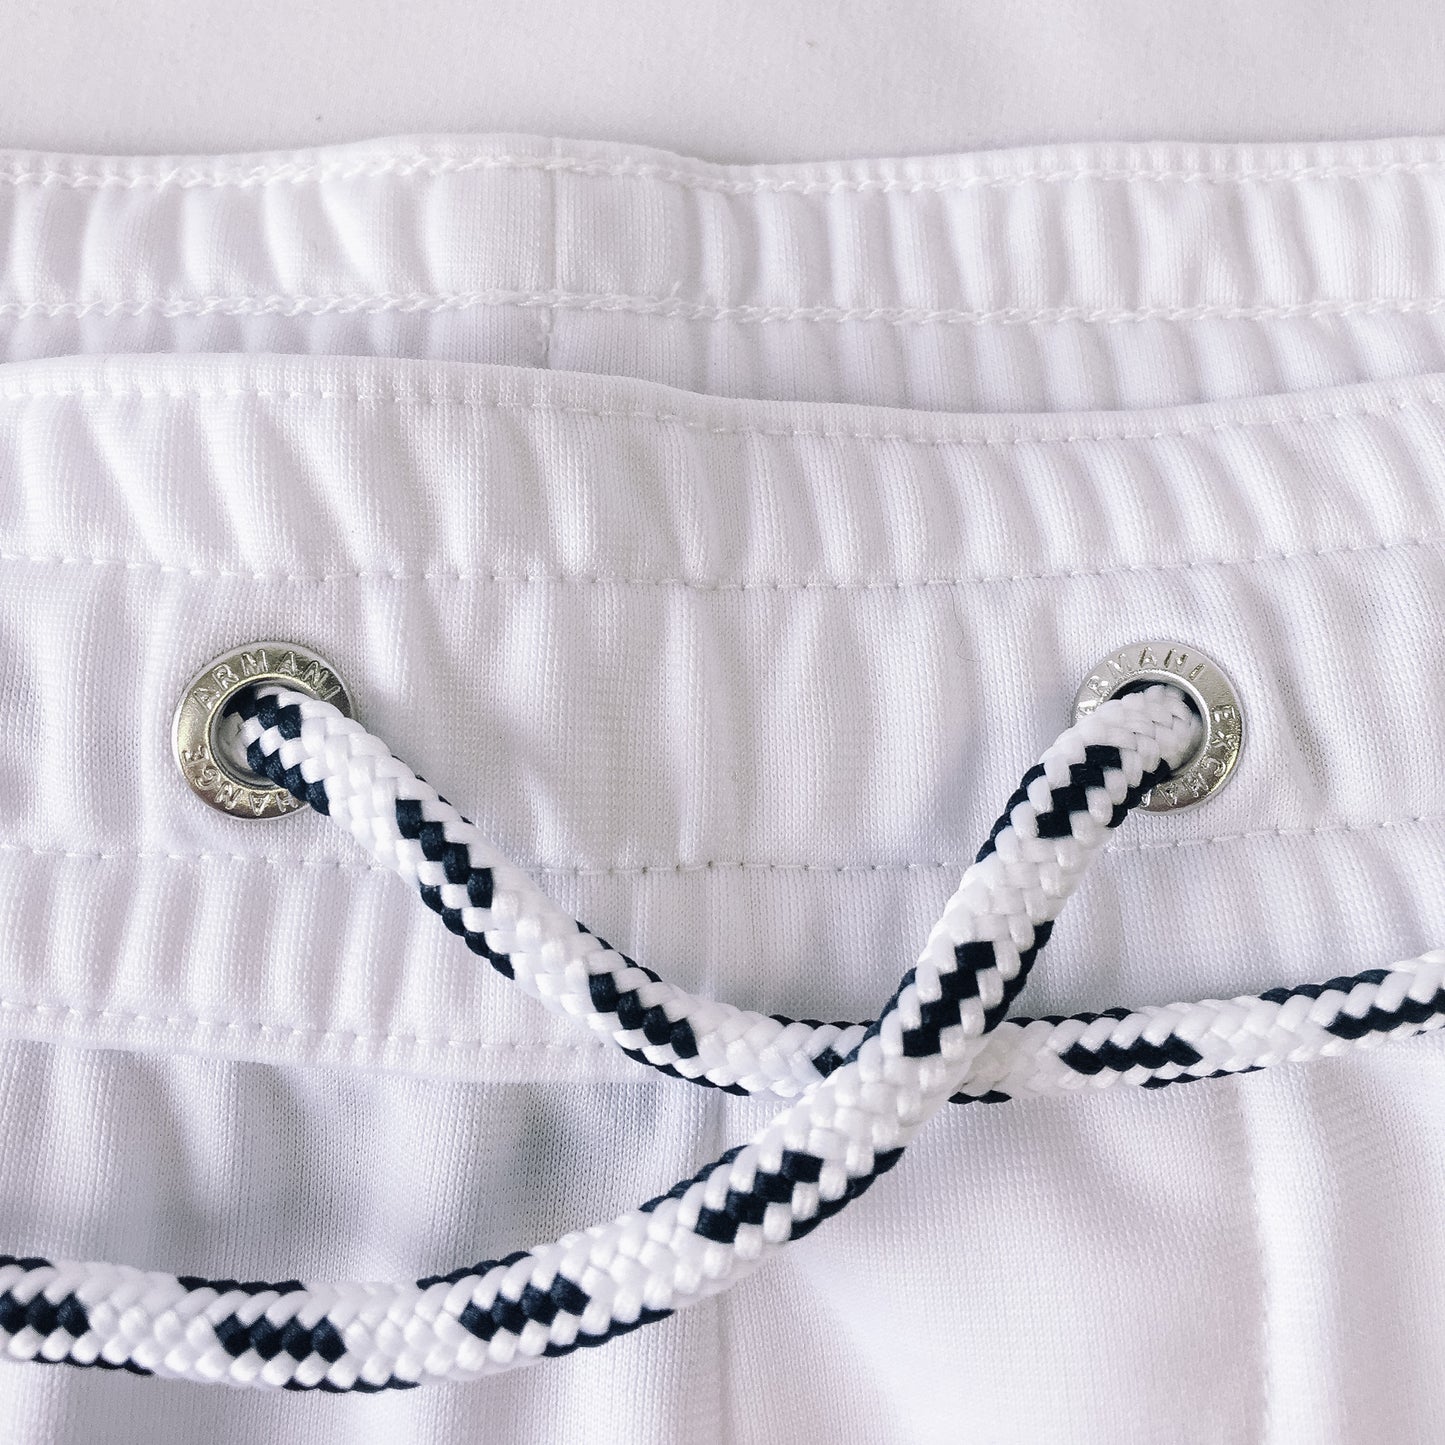 Armani Exchange A|X Men's White Triacetate Logo Tape Drawstring Sweatpants, Sz. L